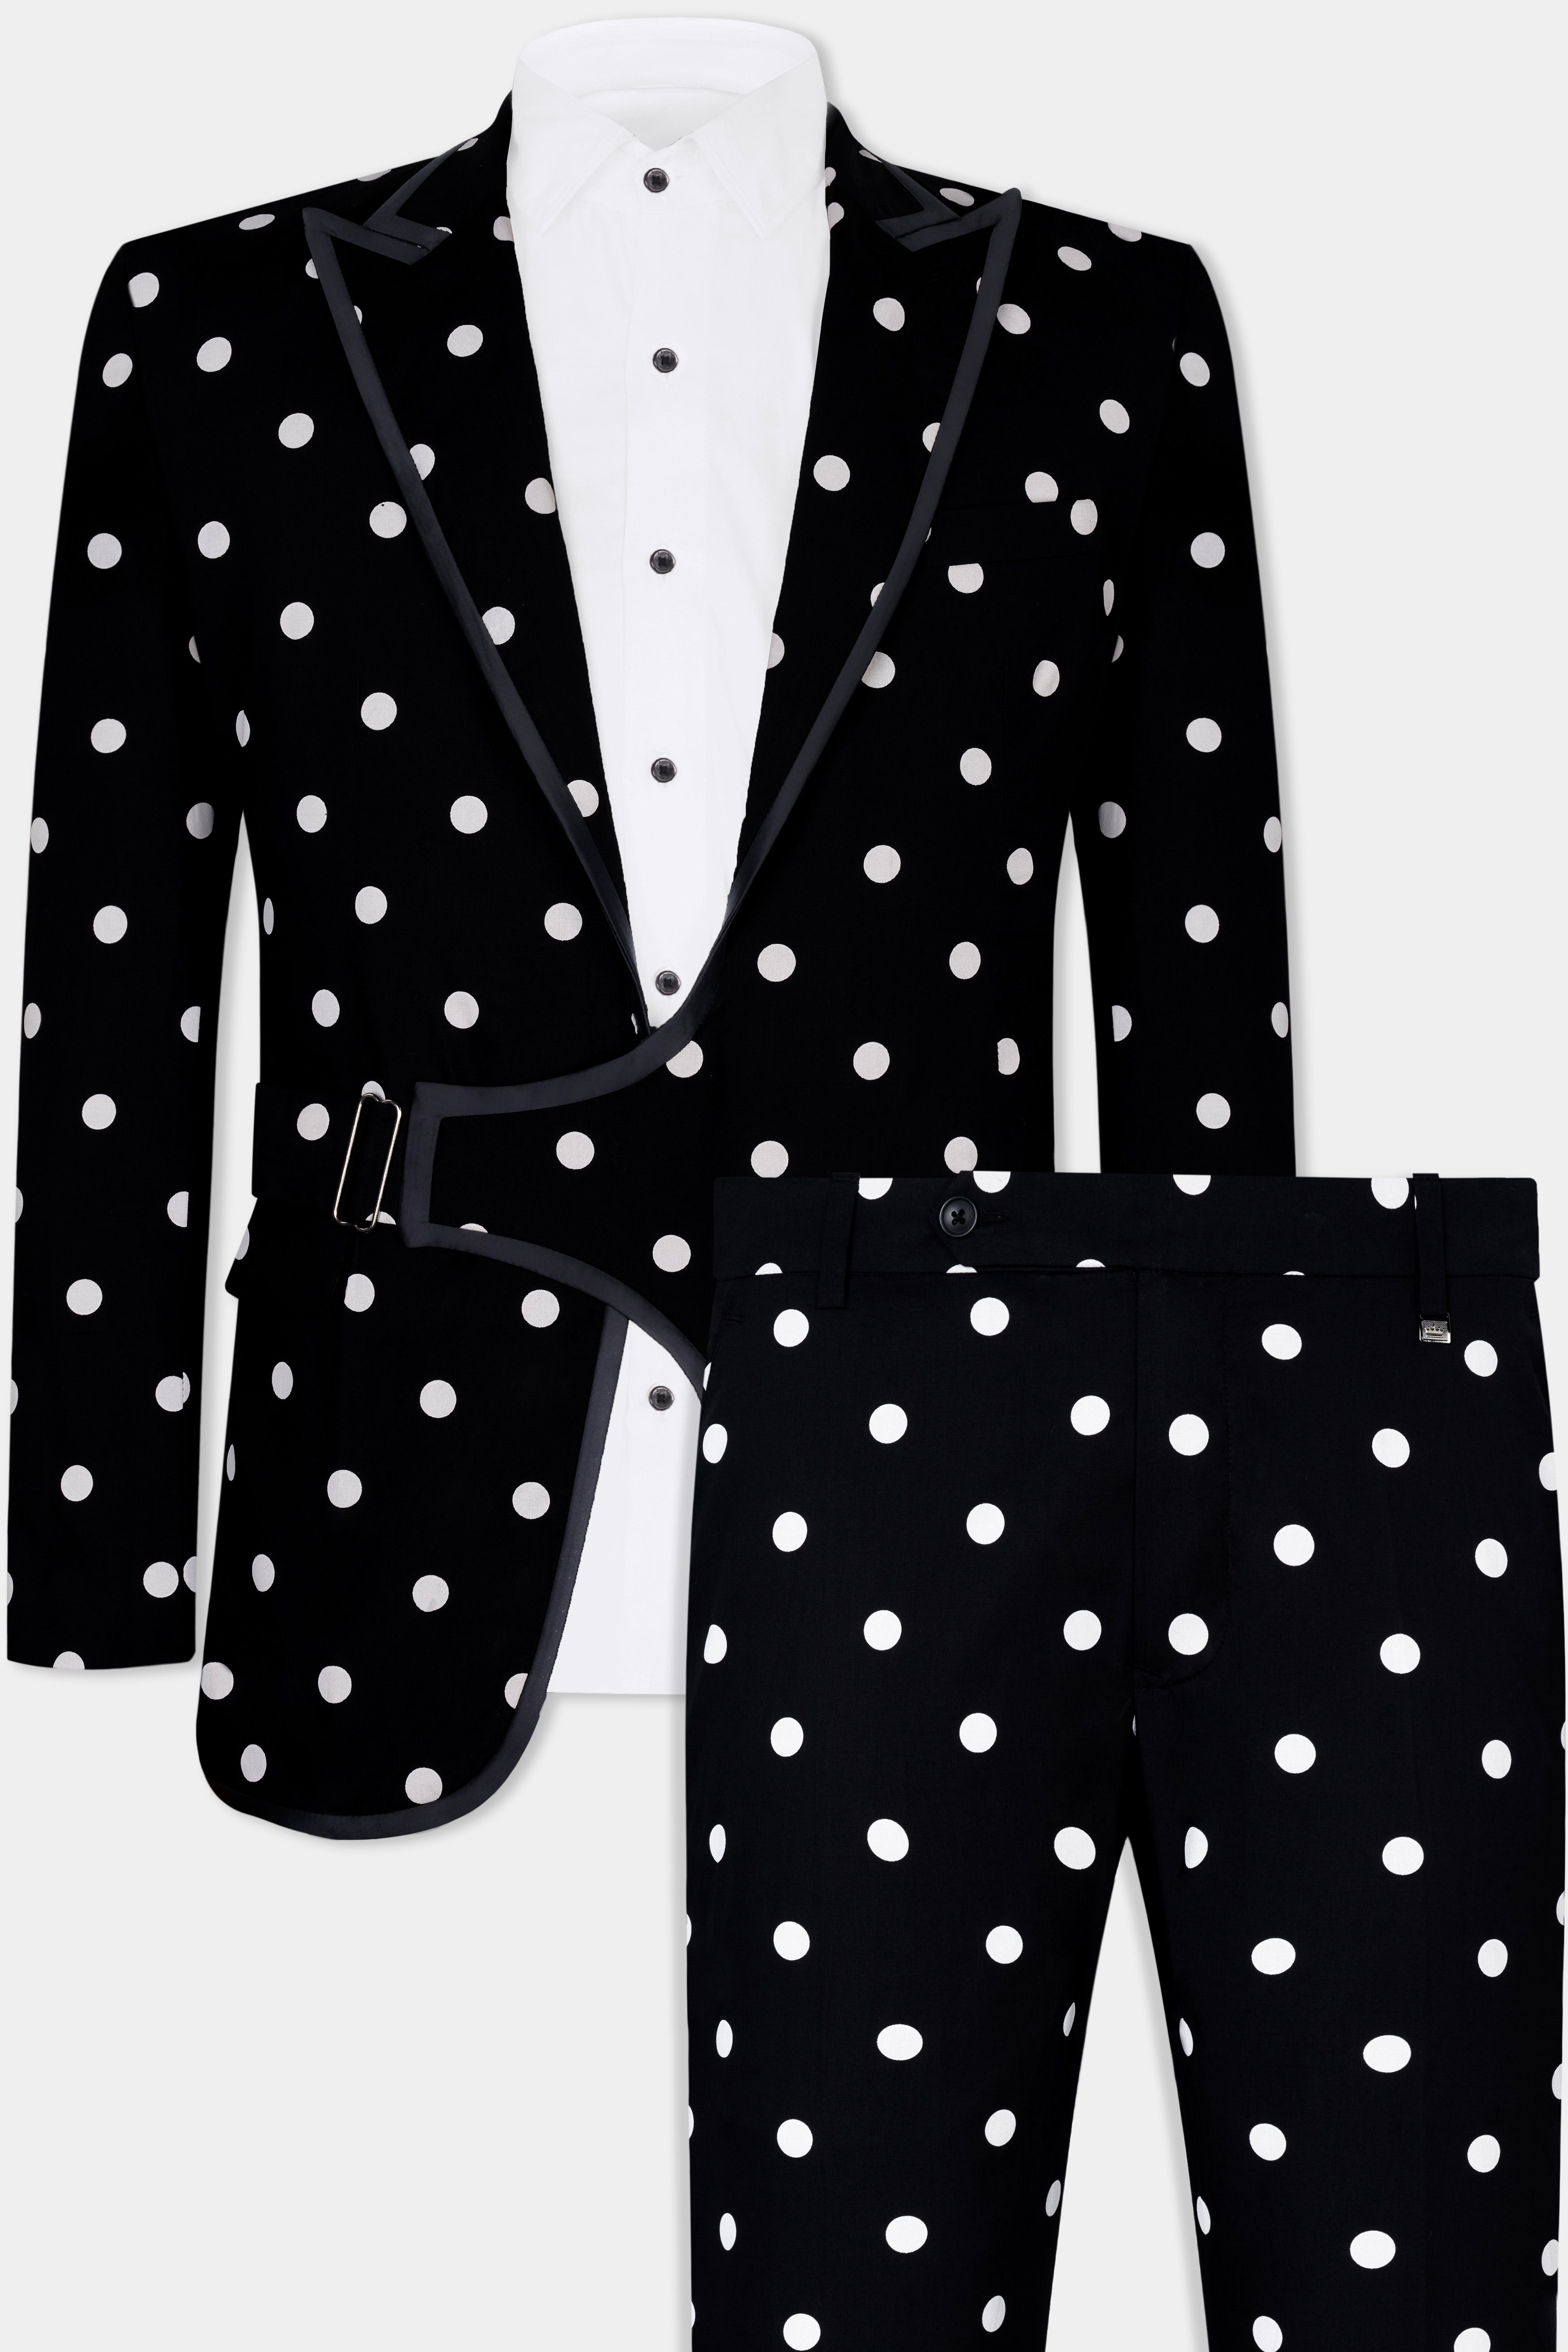 Jade Black with White Polka Dotted Premium Cotton Designer Suit ST2845-SBP-D442-36, ST2845-SBP-D442-38, ST2845-SBP-D442-40, ST2845-SBP-D442-42, ST2845-SBP-D442-44, ST2845-SBP-D442-46, ST2845-SBP-D442-48, ST2845-SBP-D442-50, ST2845-SBP-D442-52, ST2845-SBP-D442-54, ST2845-SBP-D442-56, ST2845-SBP-D442-58, ST2845-SBP-D442-60